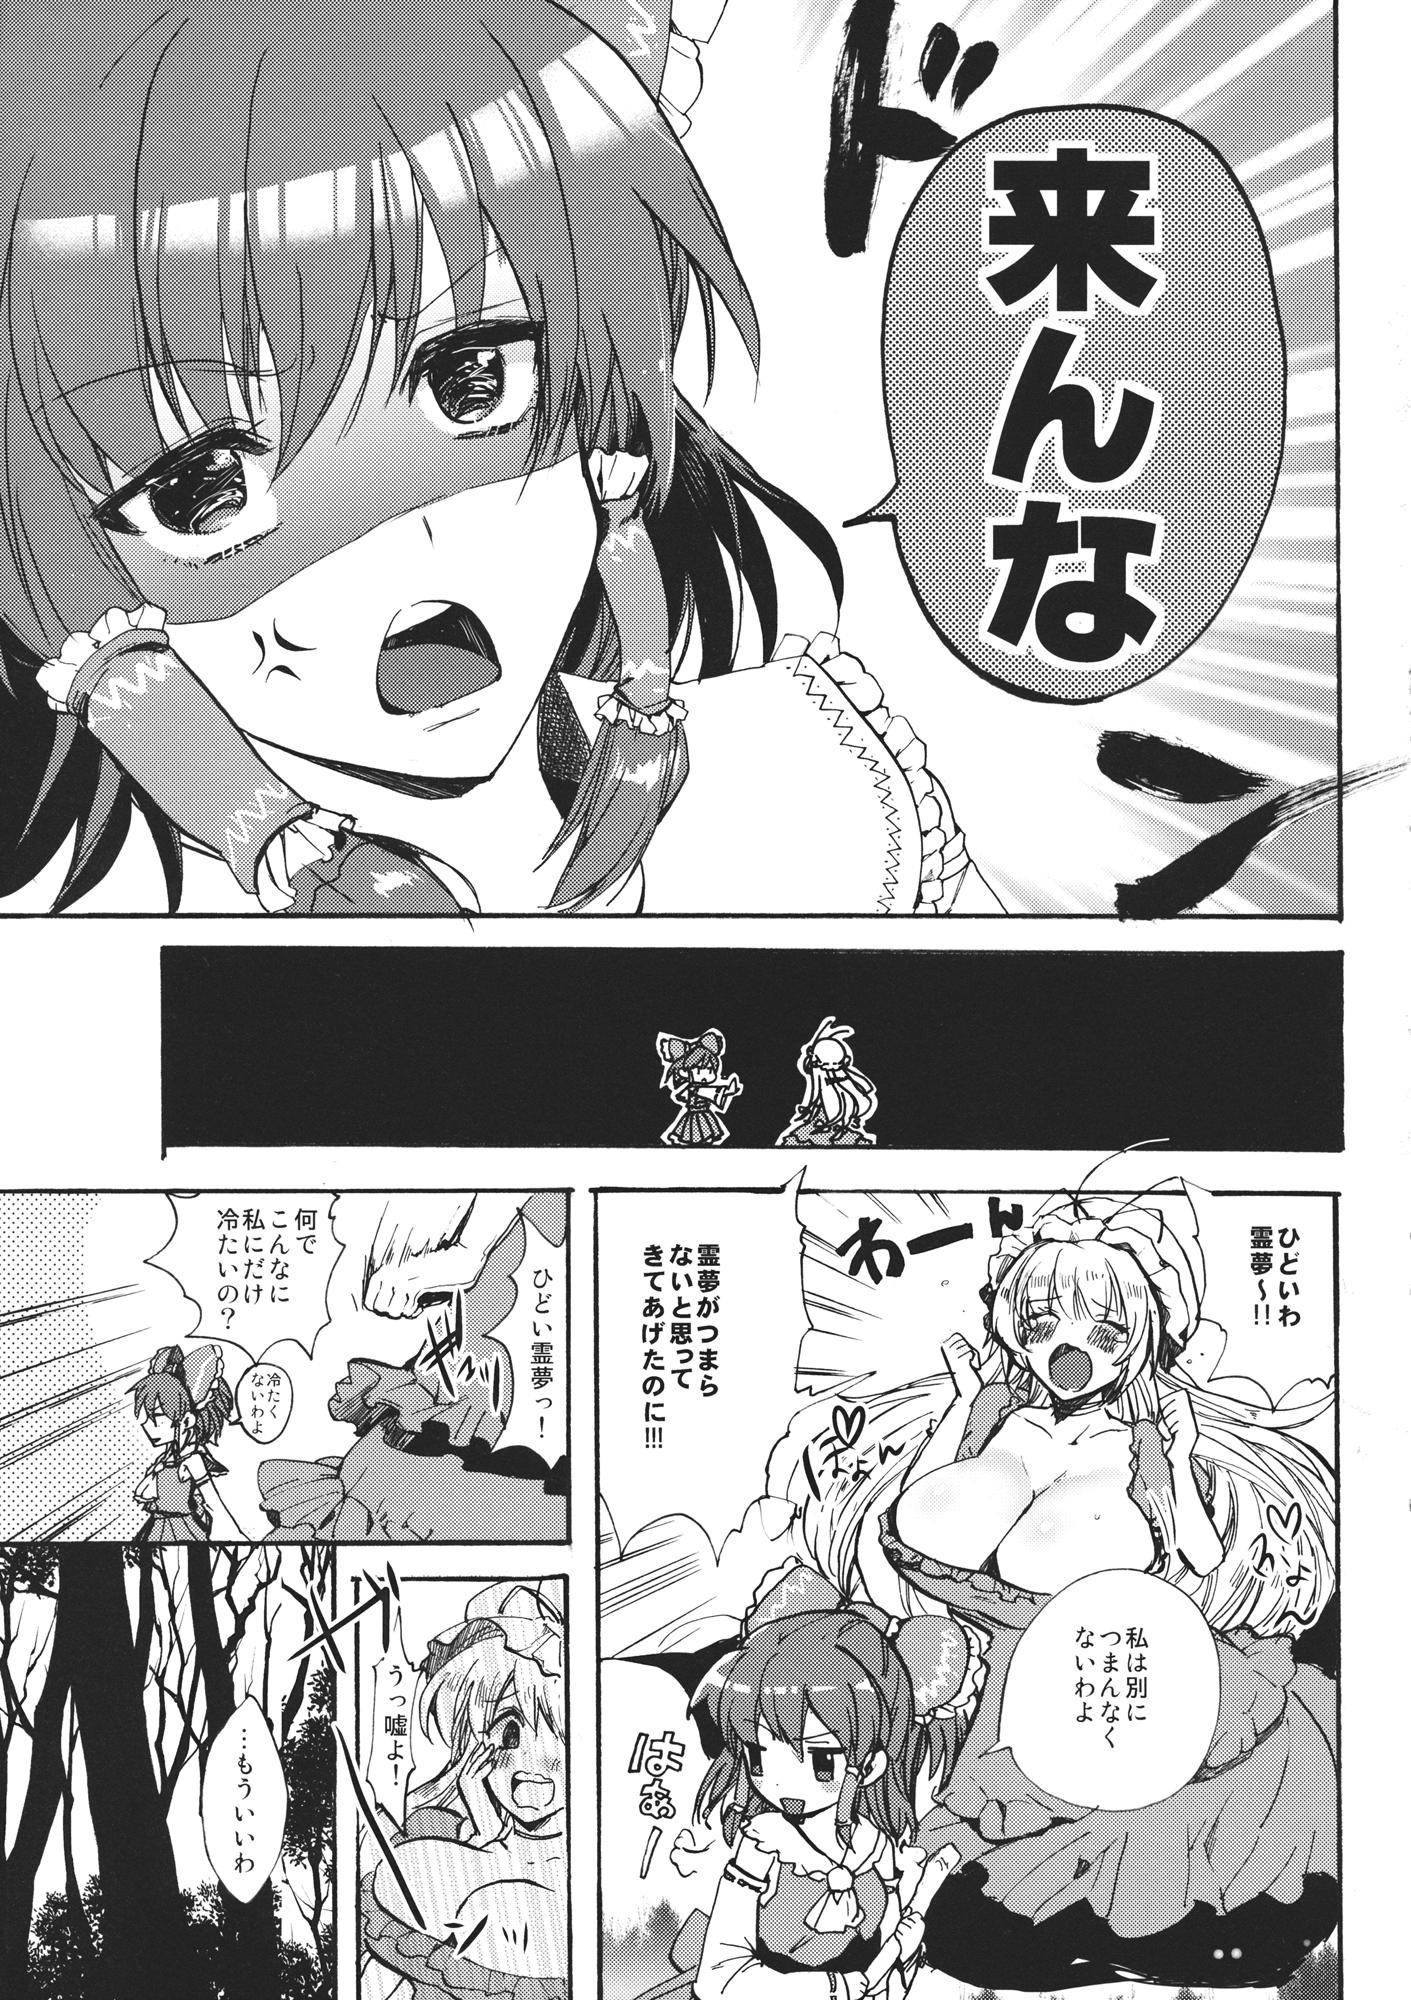 Huge Watashi no Reimu ga Konnani Tsumetai Hazu ga nai - Touhou project Panties - Page 6